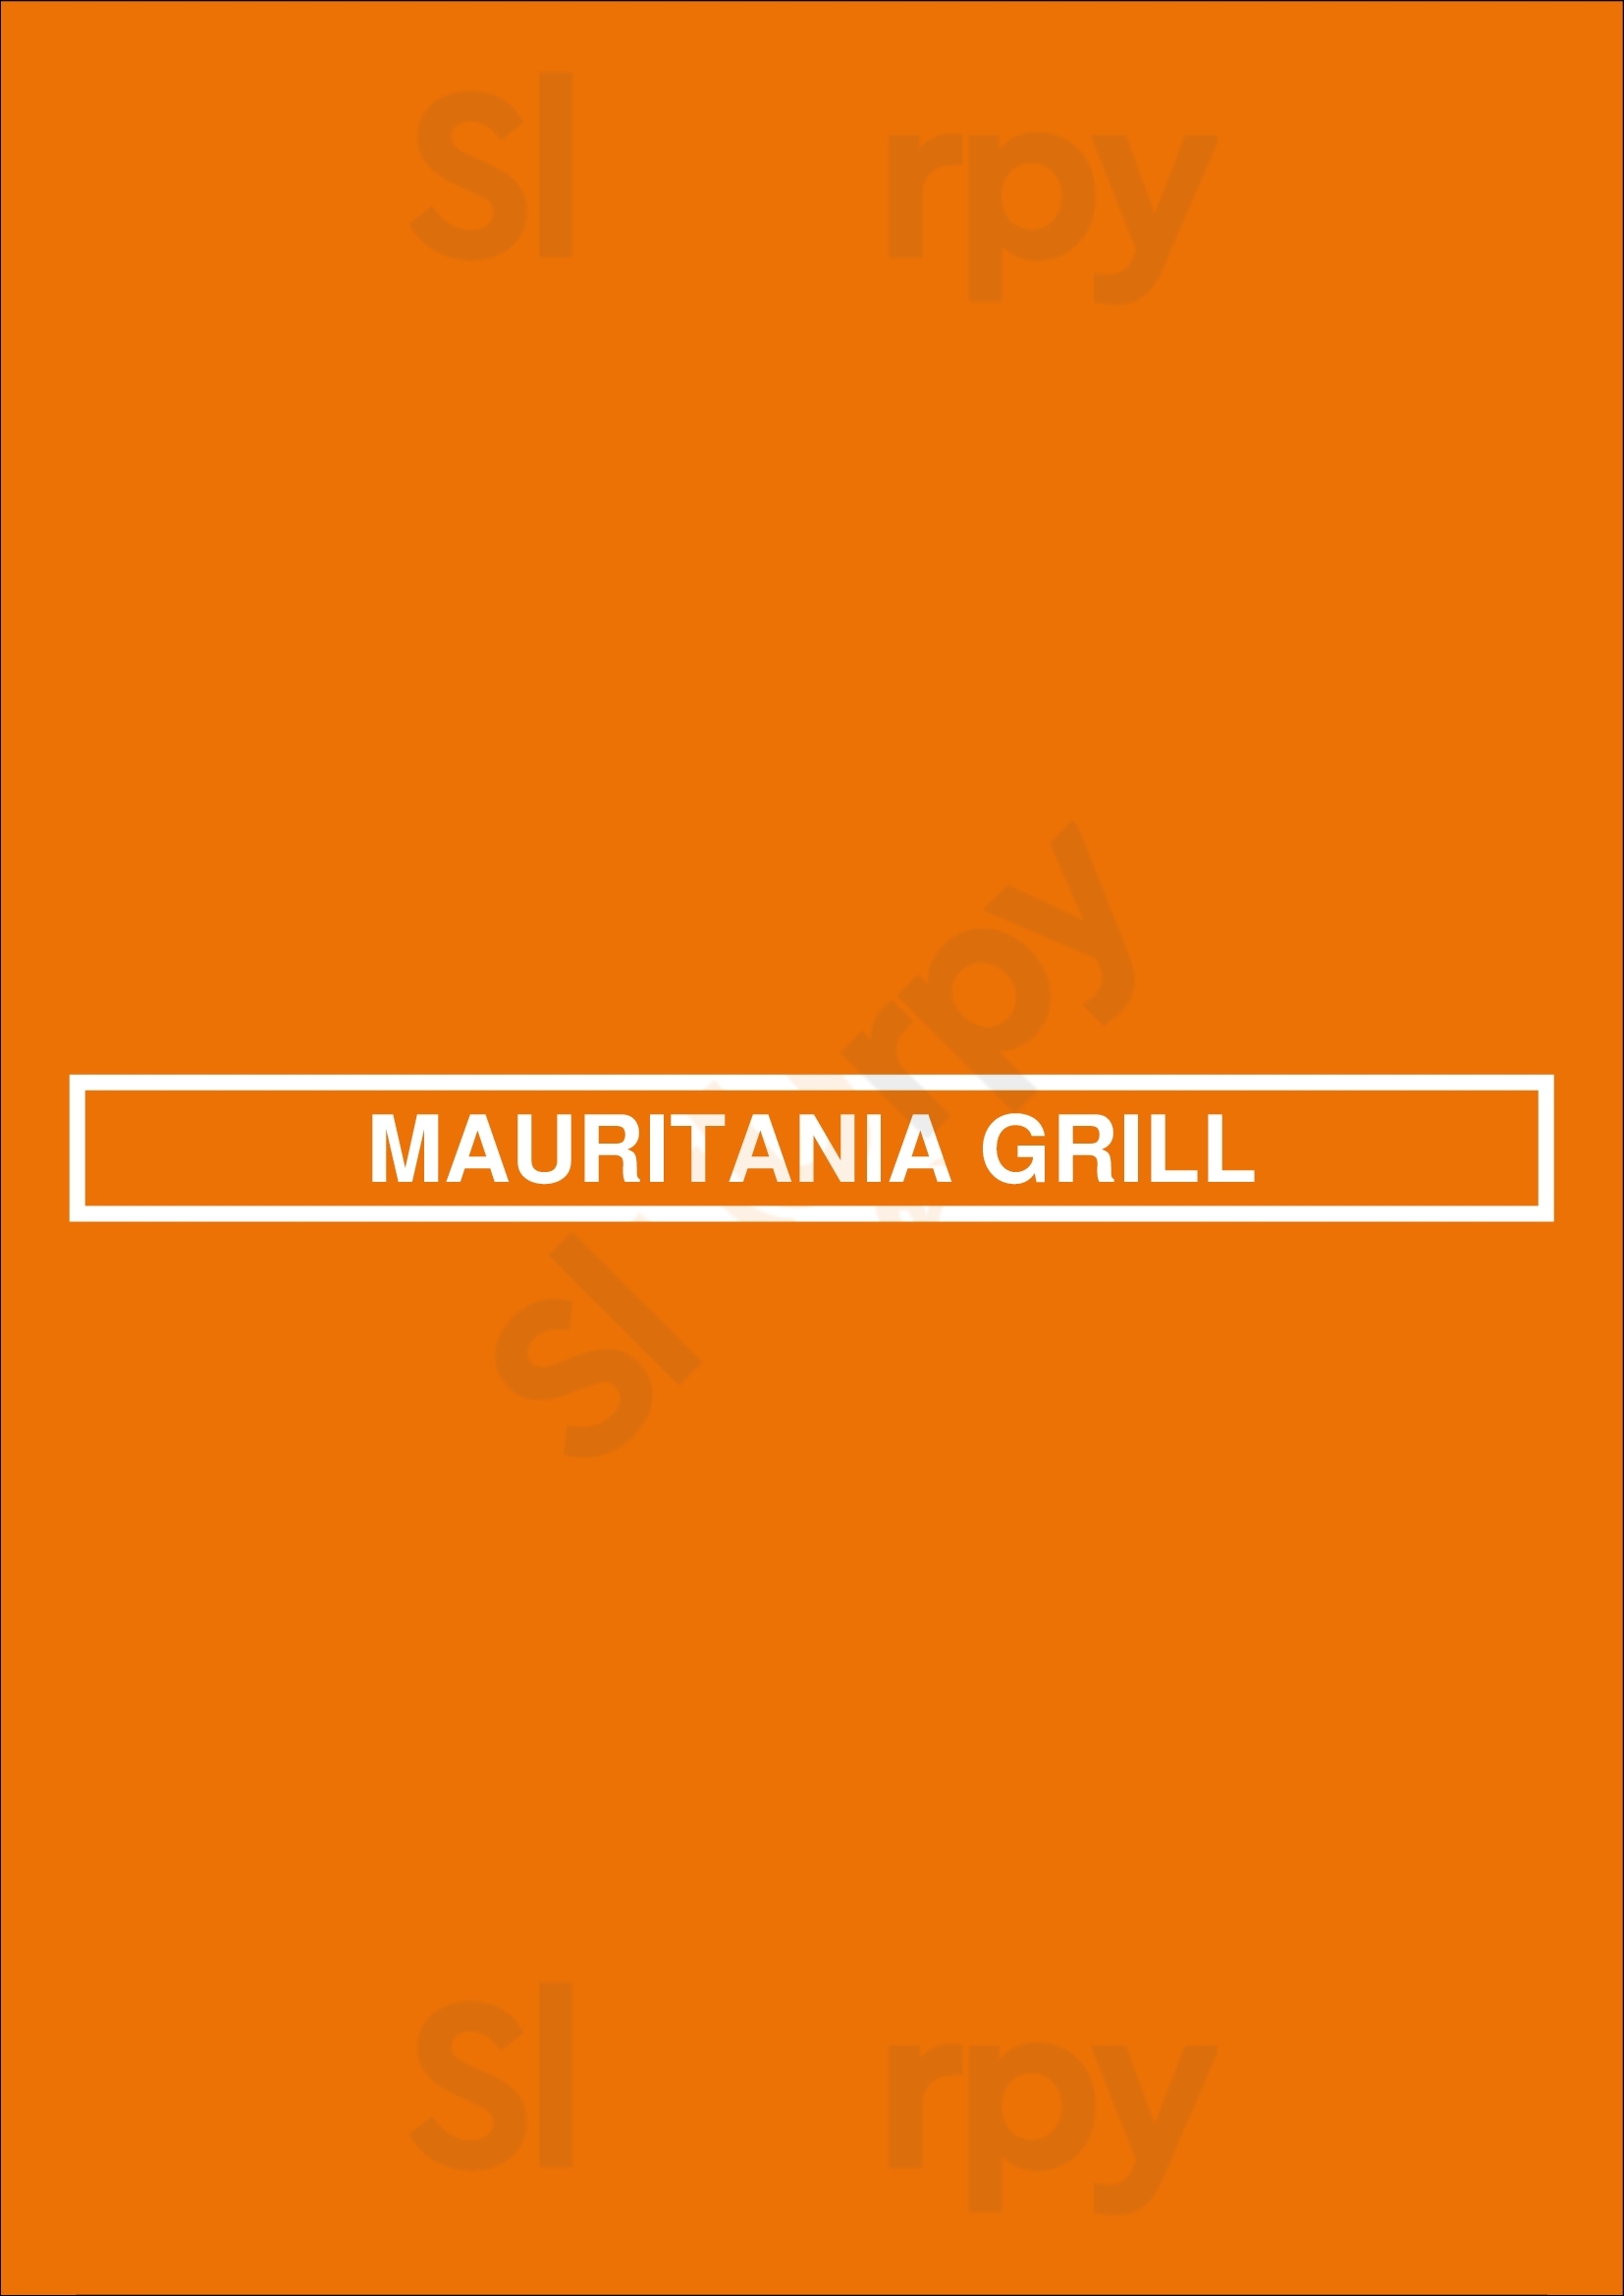 Mauritania Grill Leça da Palmeira Menu - 1